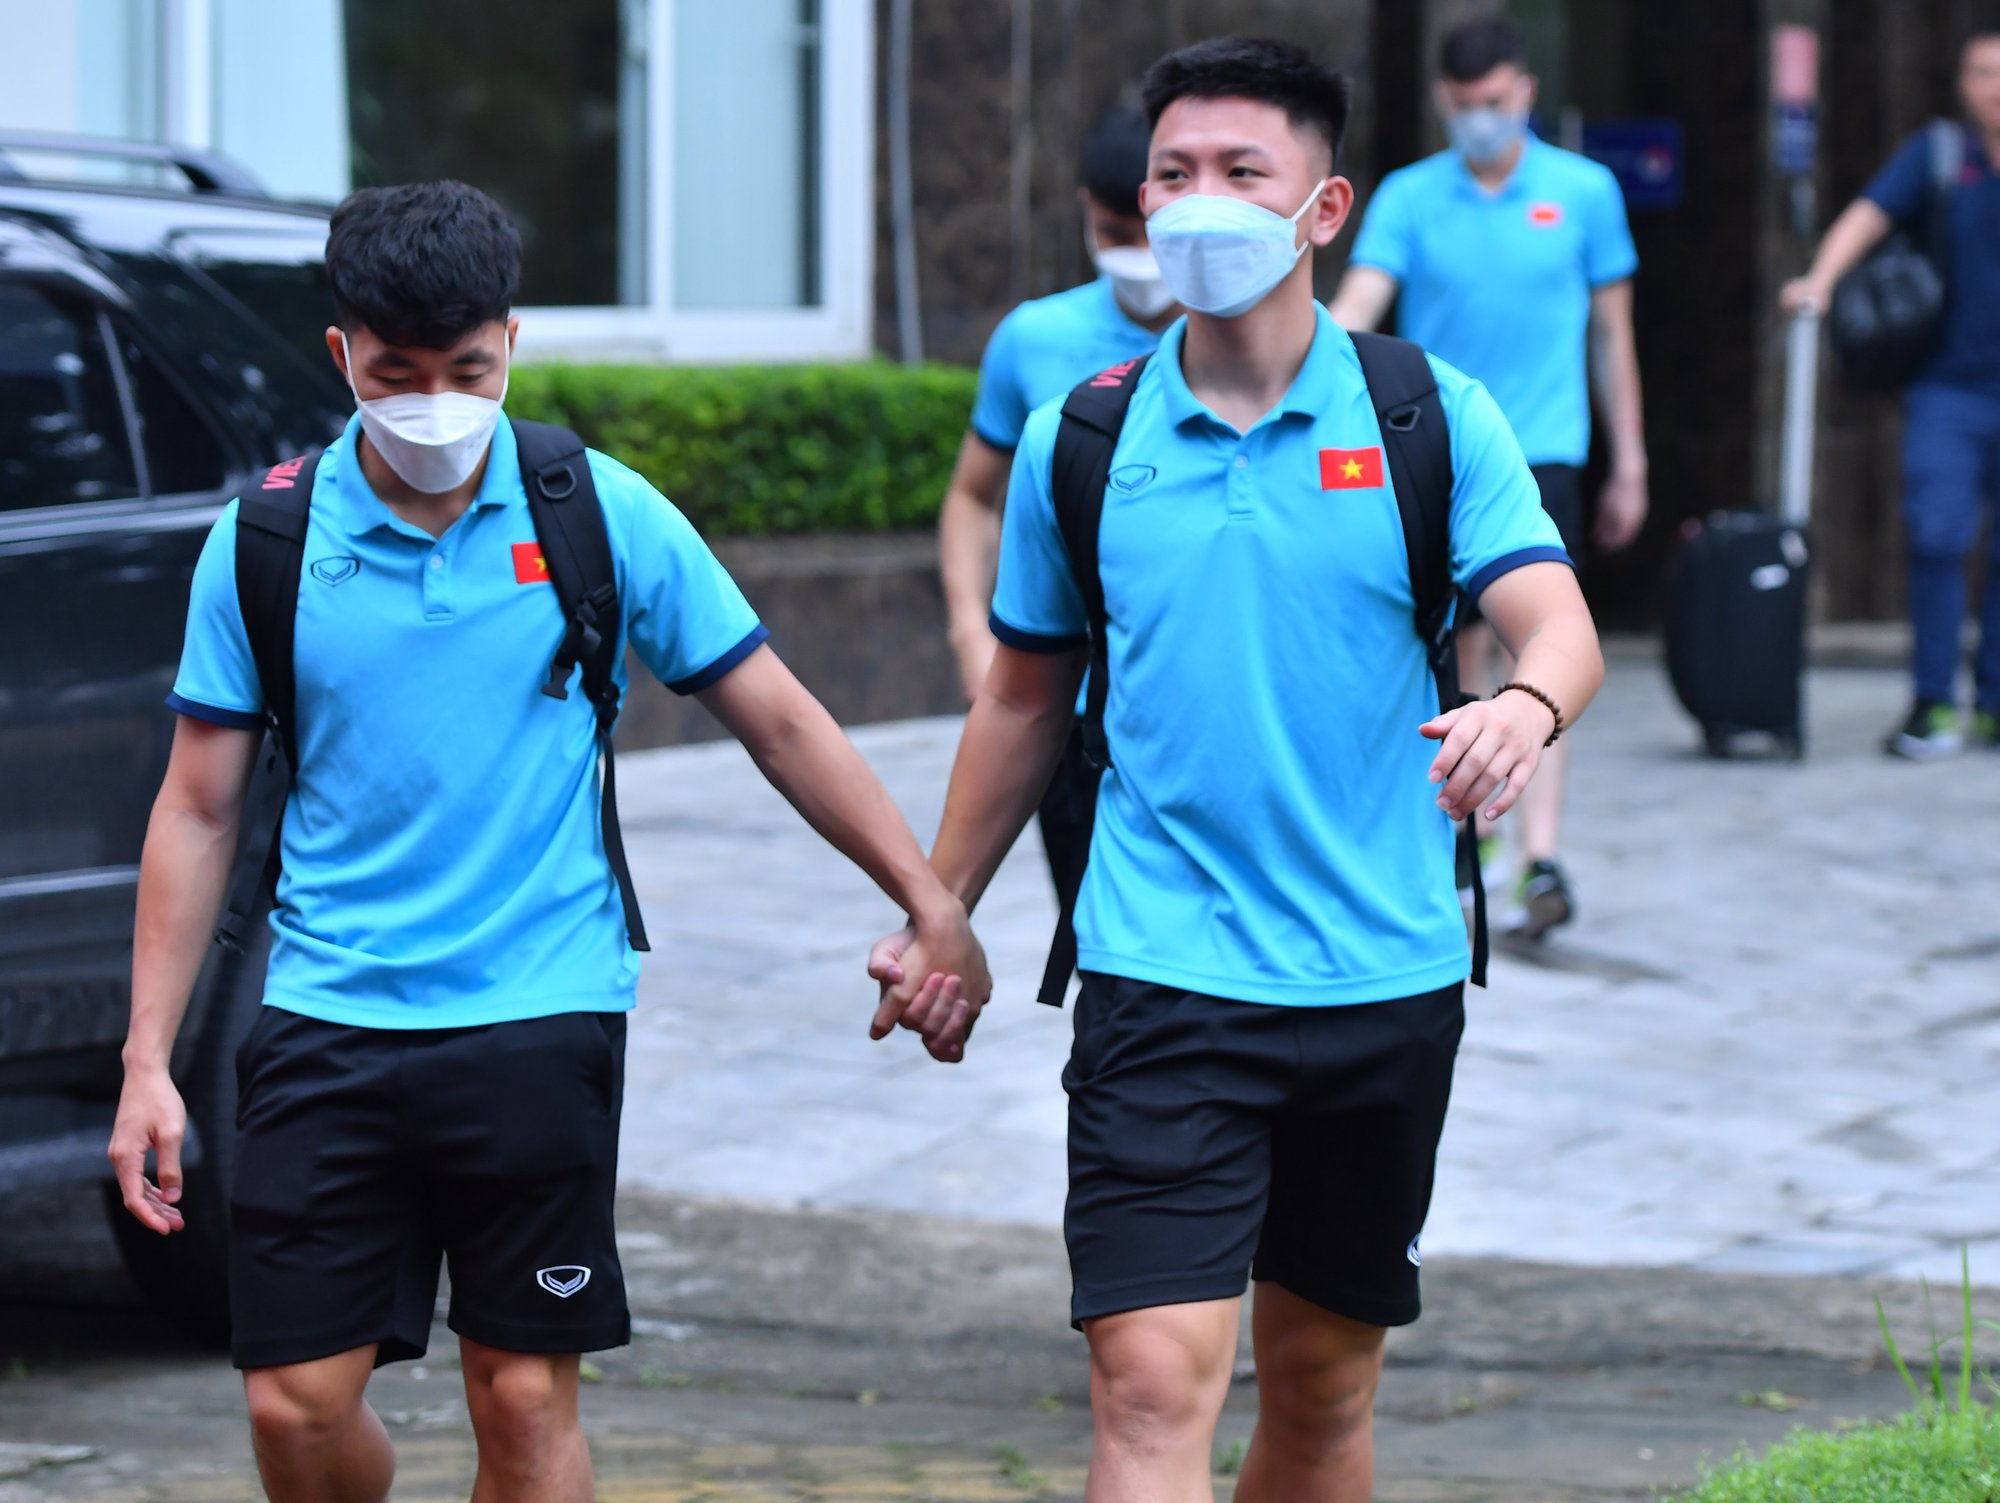 HLV U23 Việt Nam: Các cầu thủ cứ thi đấu hết mình, kết quả tôi chịu trách nhiệm - Ảnh 2.